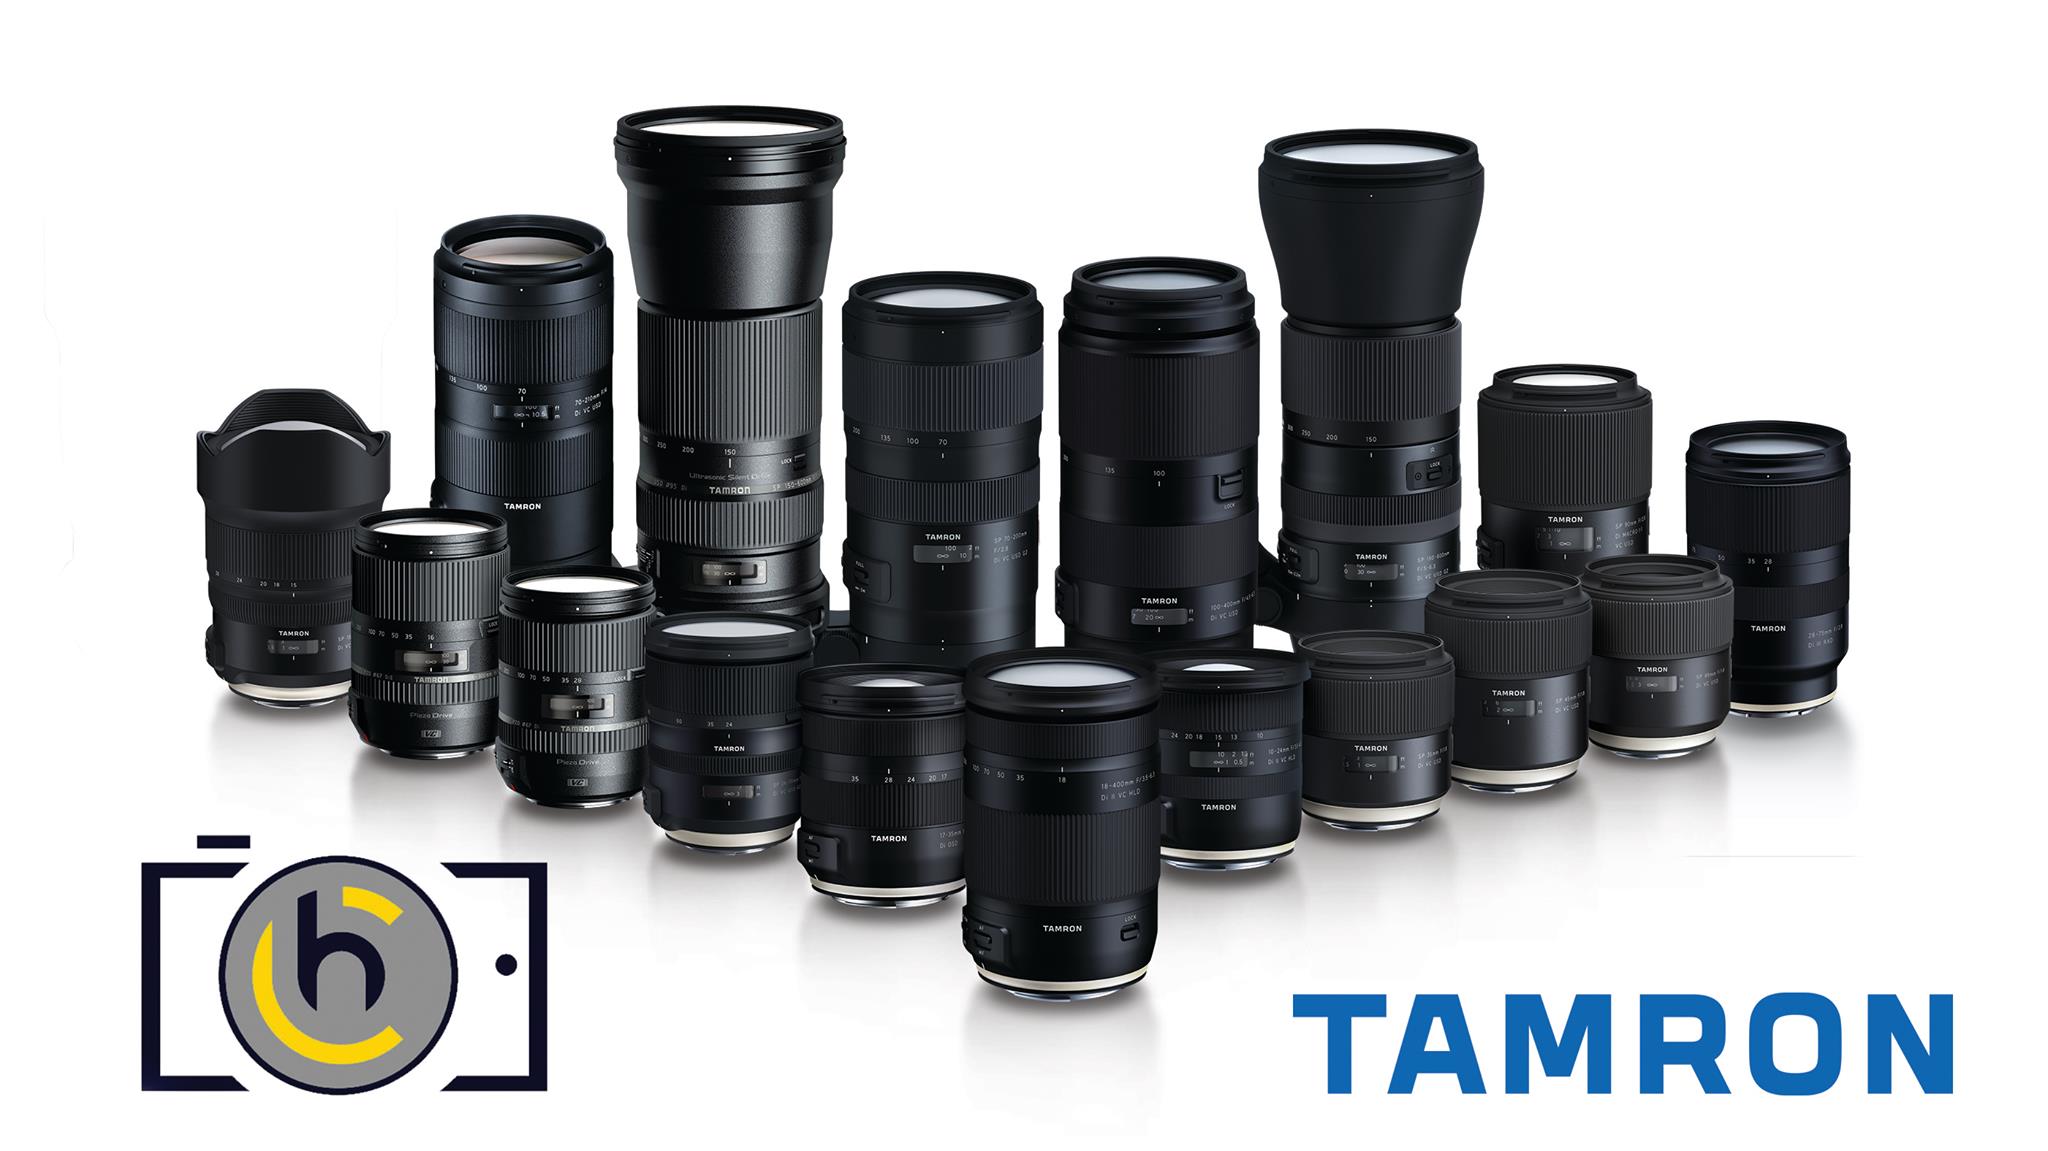 Объектив Tamron SP af 70-200mm f/2.8 di VC USD g2 (a025) Nikon f. Форт камера. Сигма 27